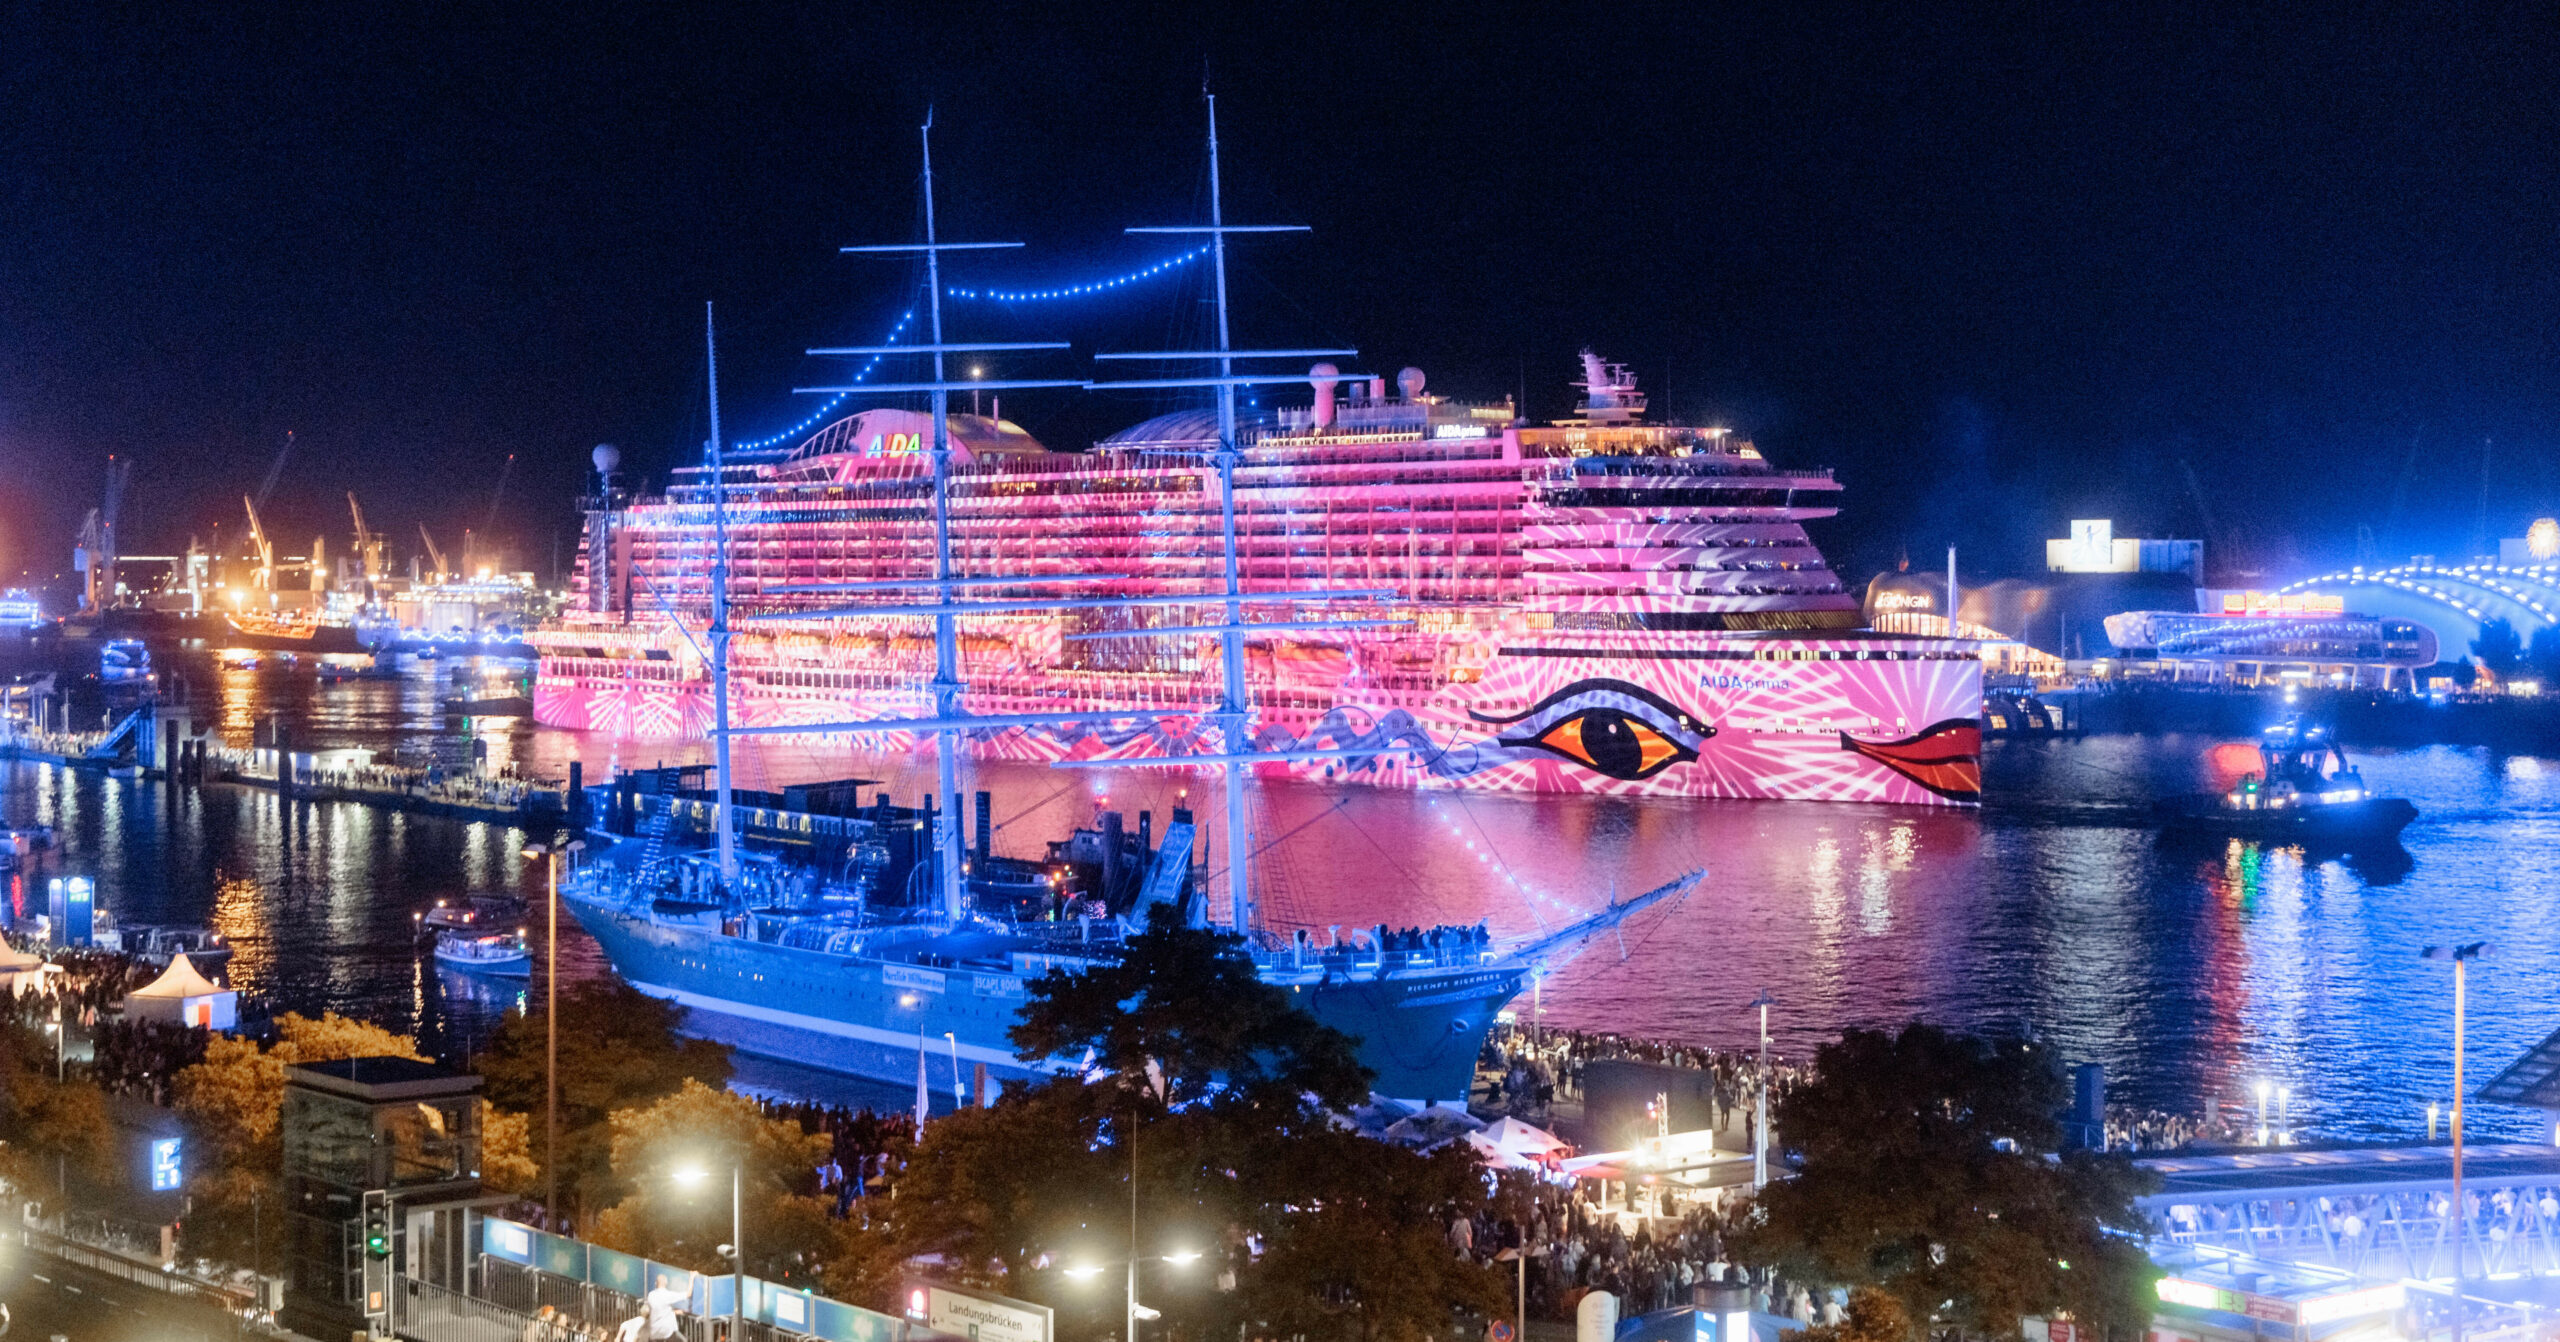 Das Kreuzfahrtschiff AIDAprima wird im Rahmen einer Kunstaktion des Lichtkünstlers Michael Batz bei den Cruise Days 2022 mit farbigem Licht und Mustern angestrahlt.